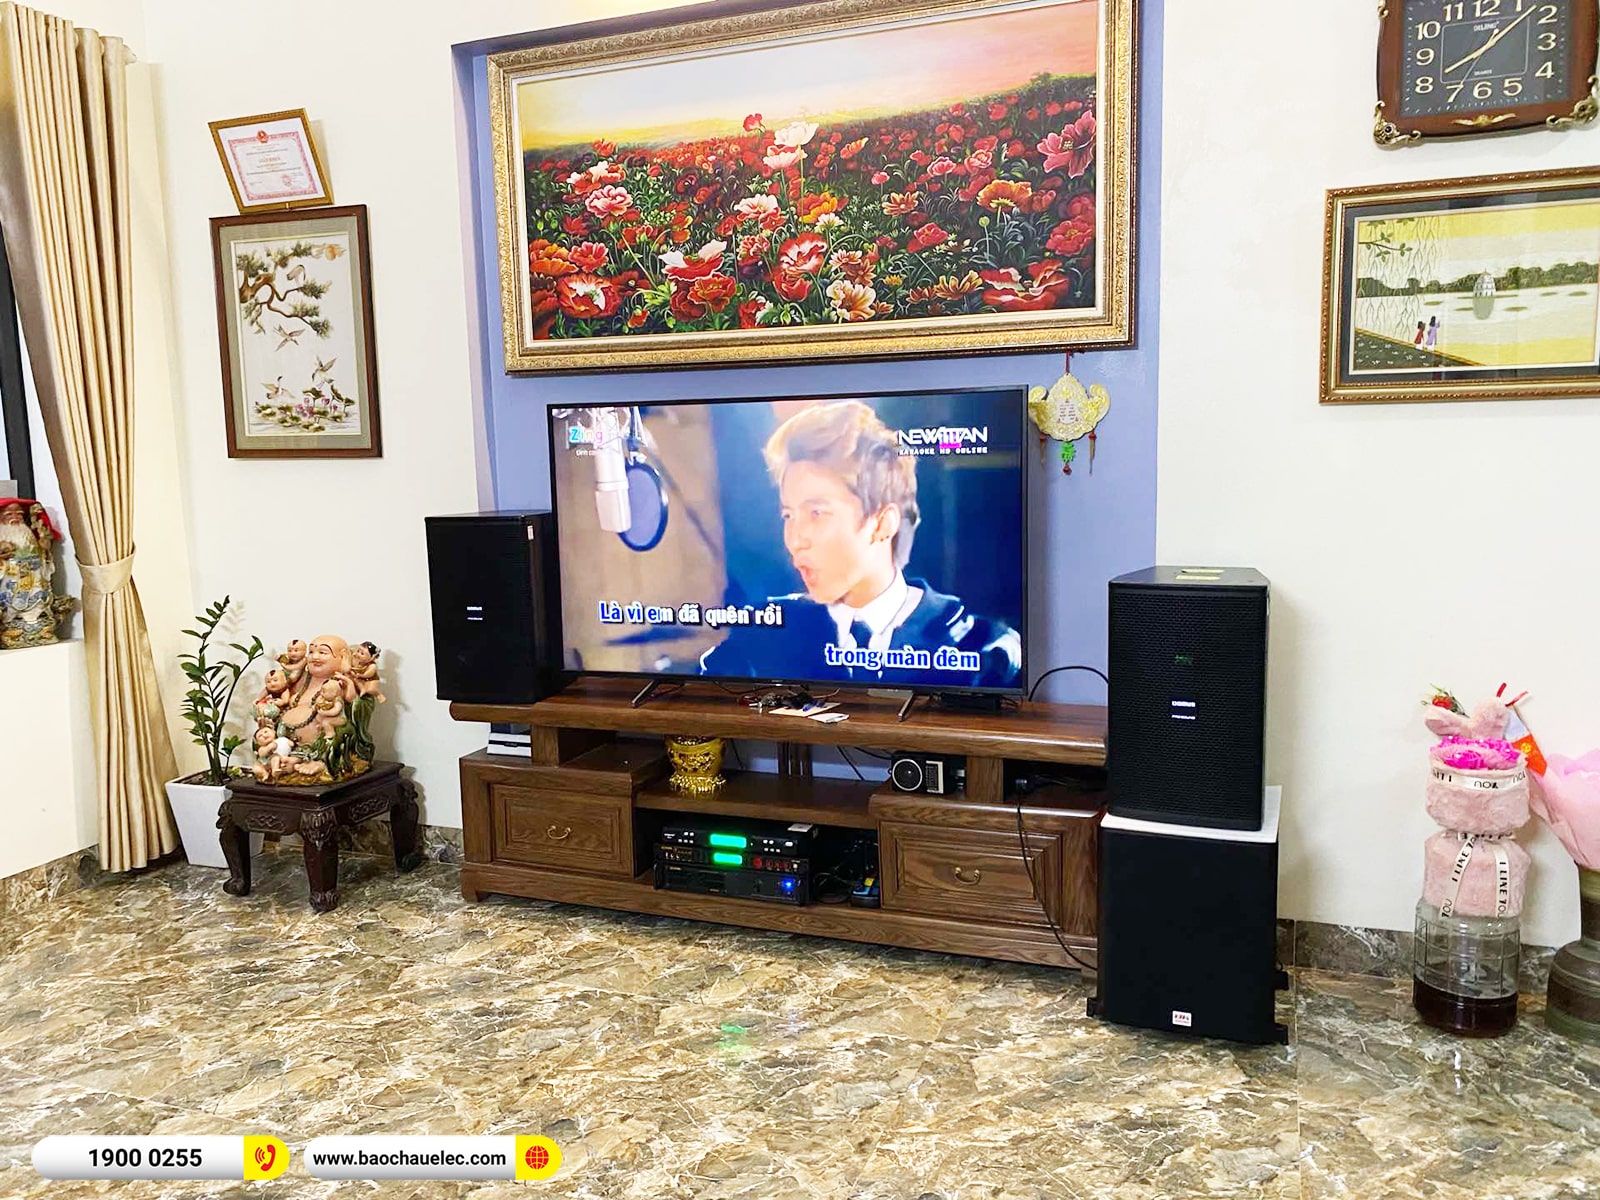 Lắp đặt dàn karaoke Domus hơn 37tr cho anh Hà tại Hà Nội (Domus DP6120 Max, VM620A, BPR-5600, SW612, M300)